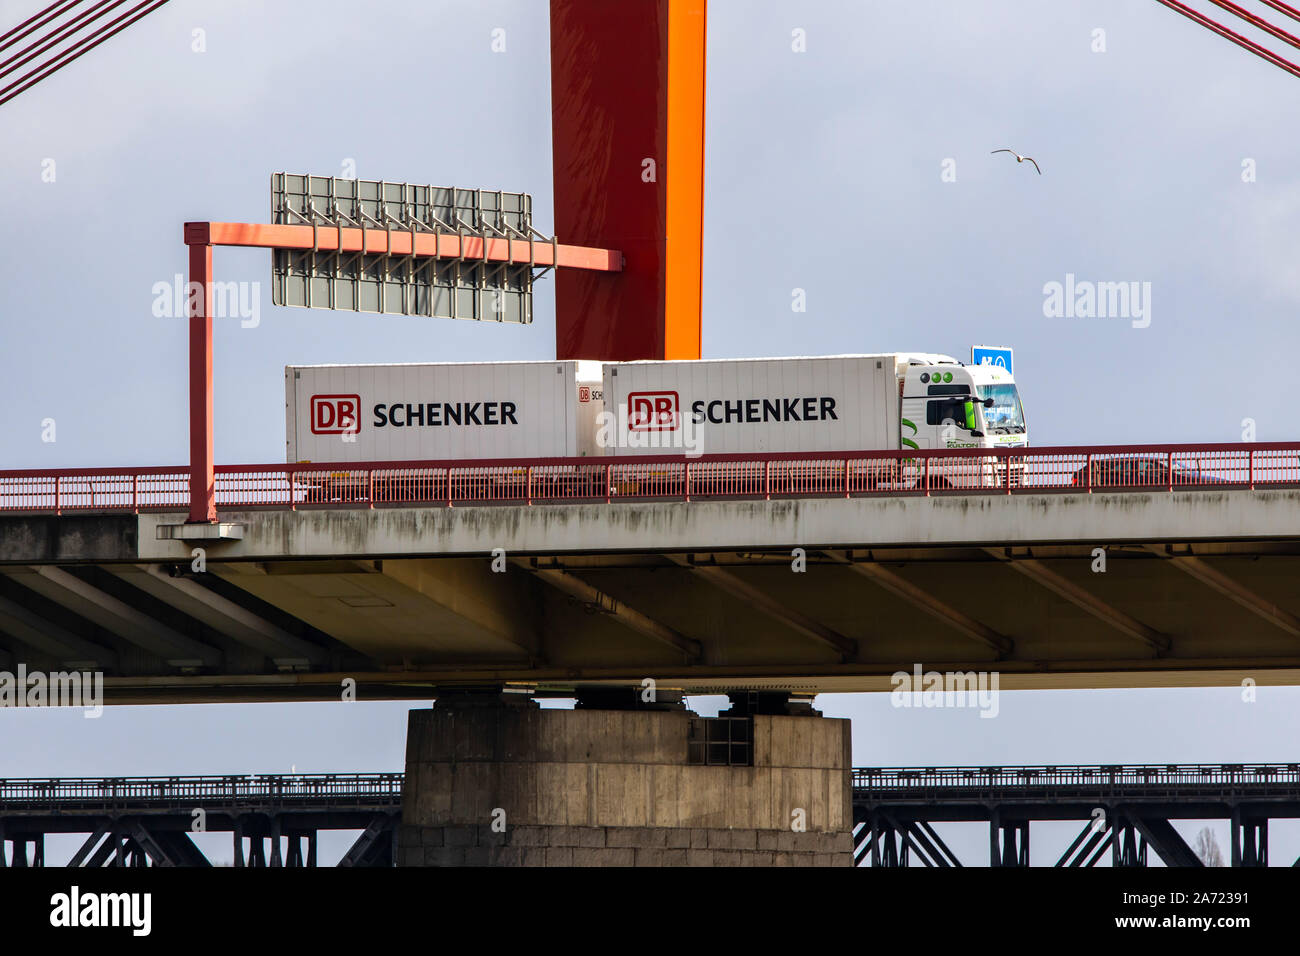 Pont sur le Rhin près de Duisburg, pont sur l'autoroute a42, pont de chemin de fer à l'arrière, DB Schenker Logistik, Allemagne Banque D'Images